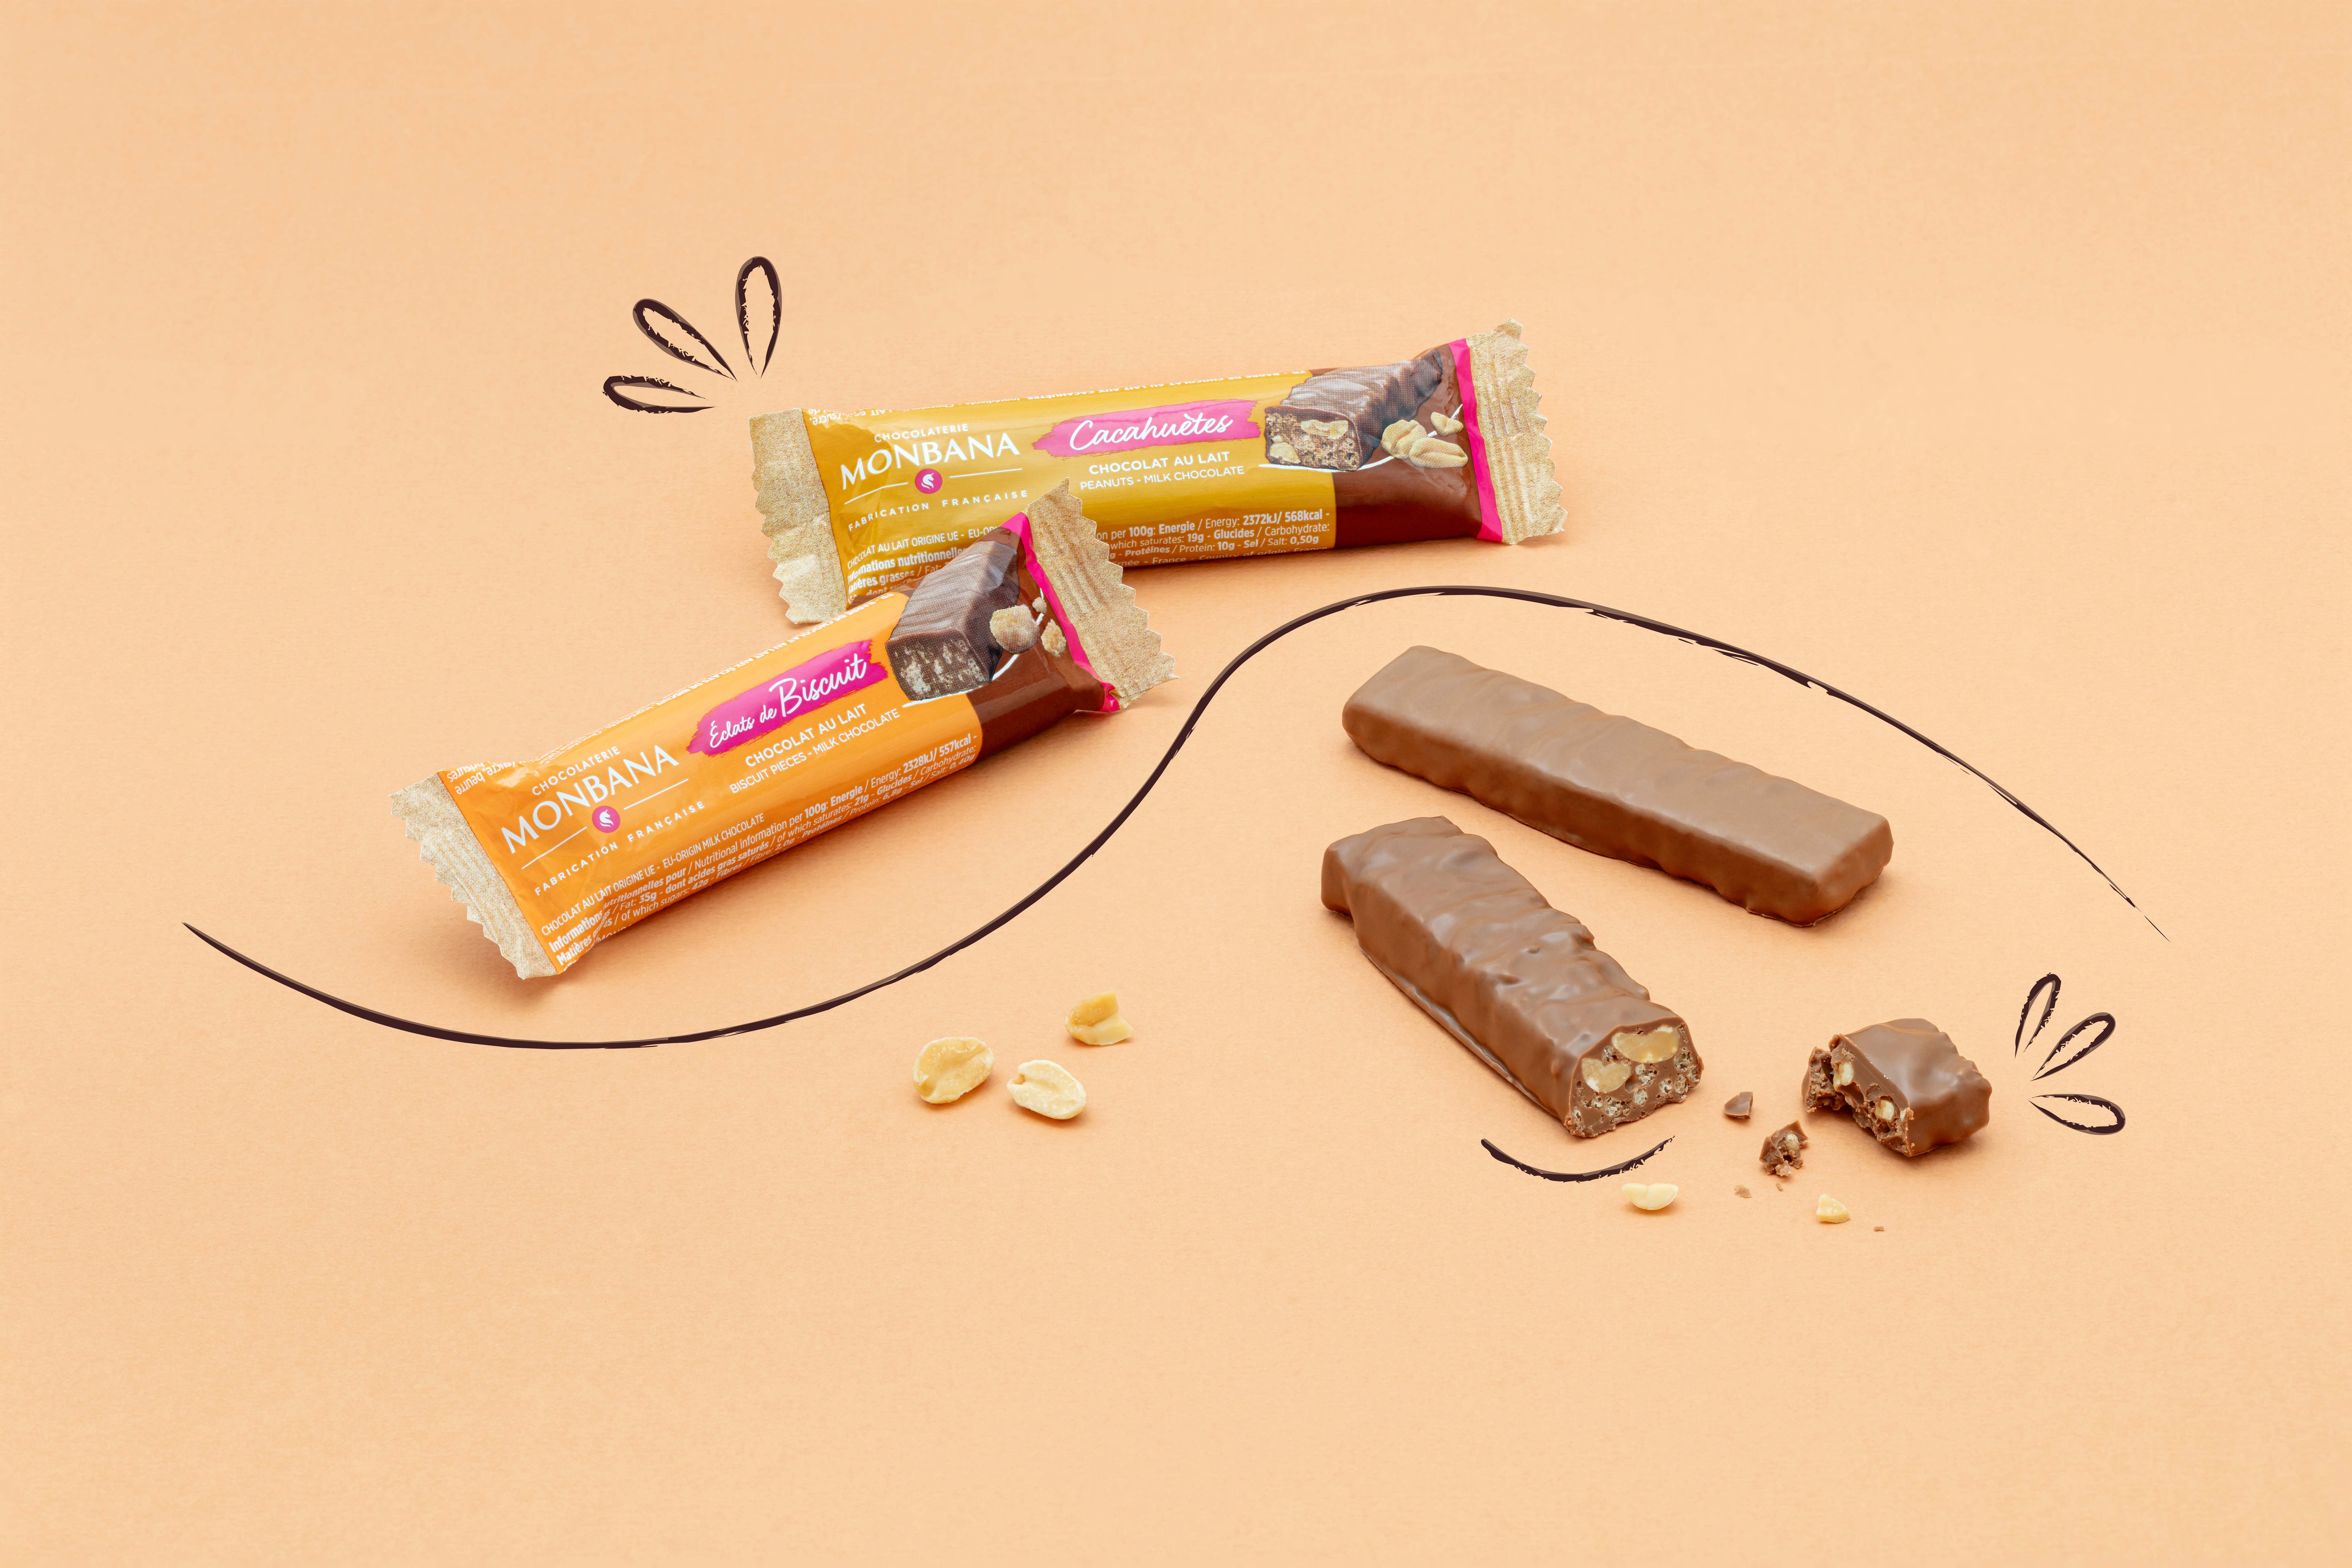 Ouvrir Franchise Monbana : rentabilité ? Chocolat haut de gamme accessibles  à tous